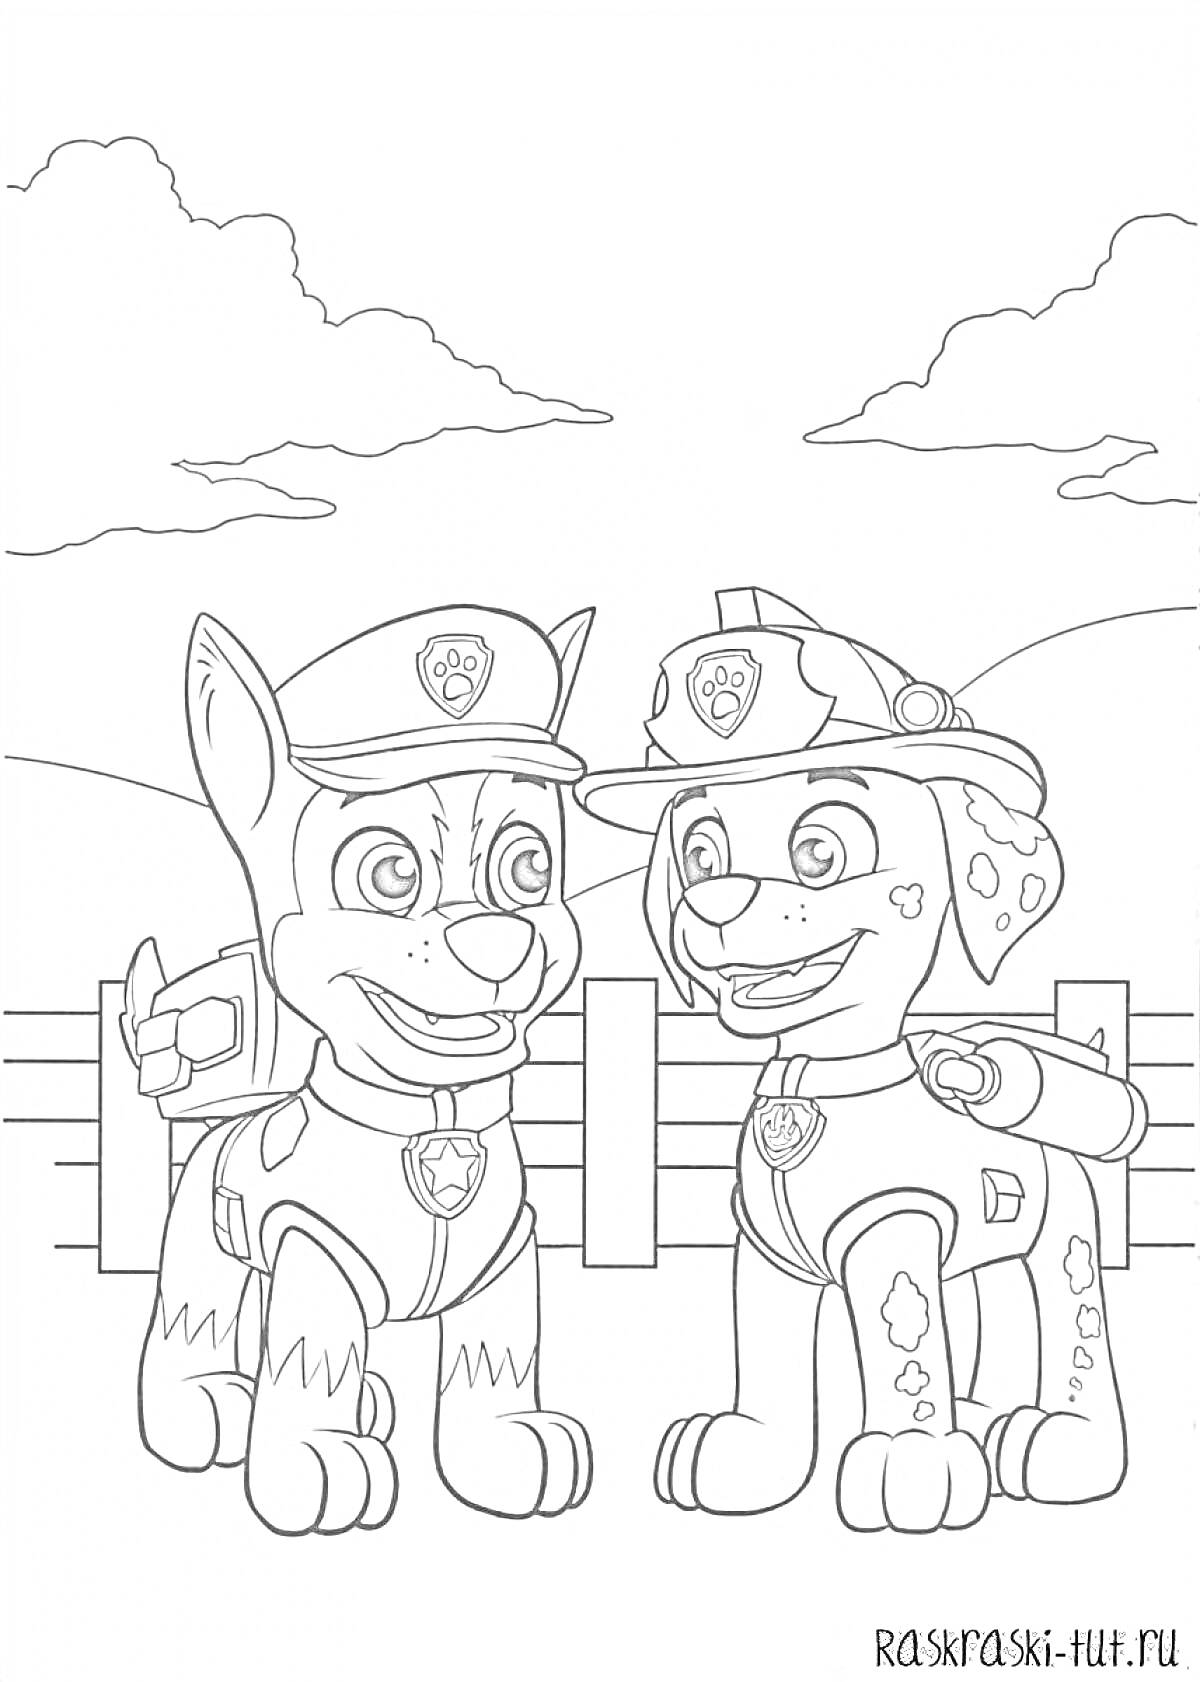 Щенячий патруль - Гонщик и Маршал рядом с забором на фоне облаков и холмов